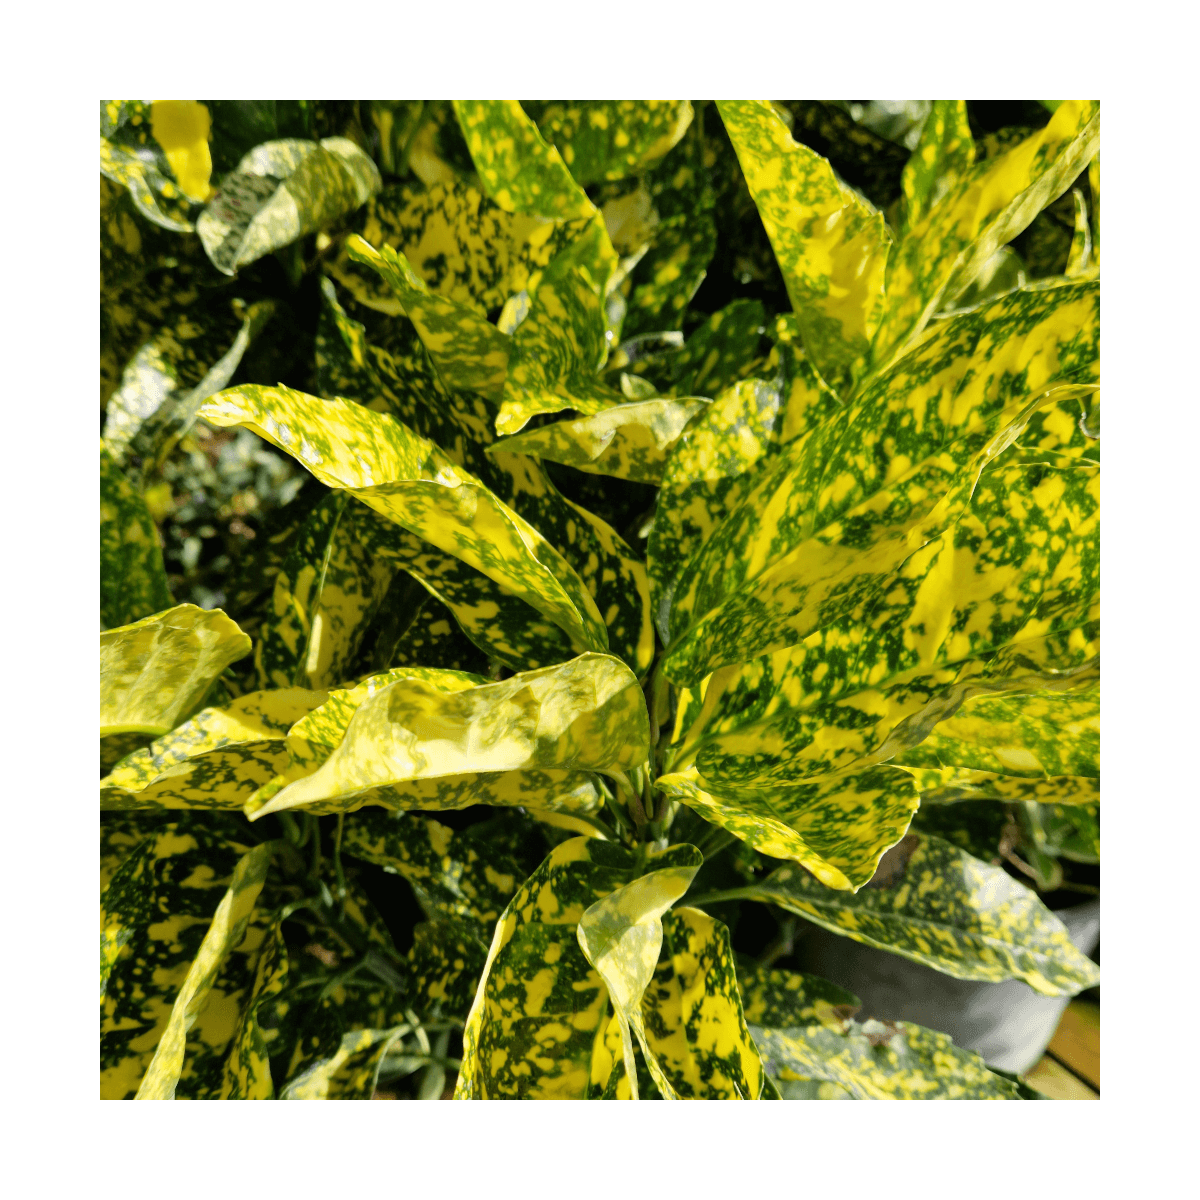 Aucuba du japon crotonifolia/aucuba japonica 'crotonifolia'[-]pot de 7,5l - 60/80 cm